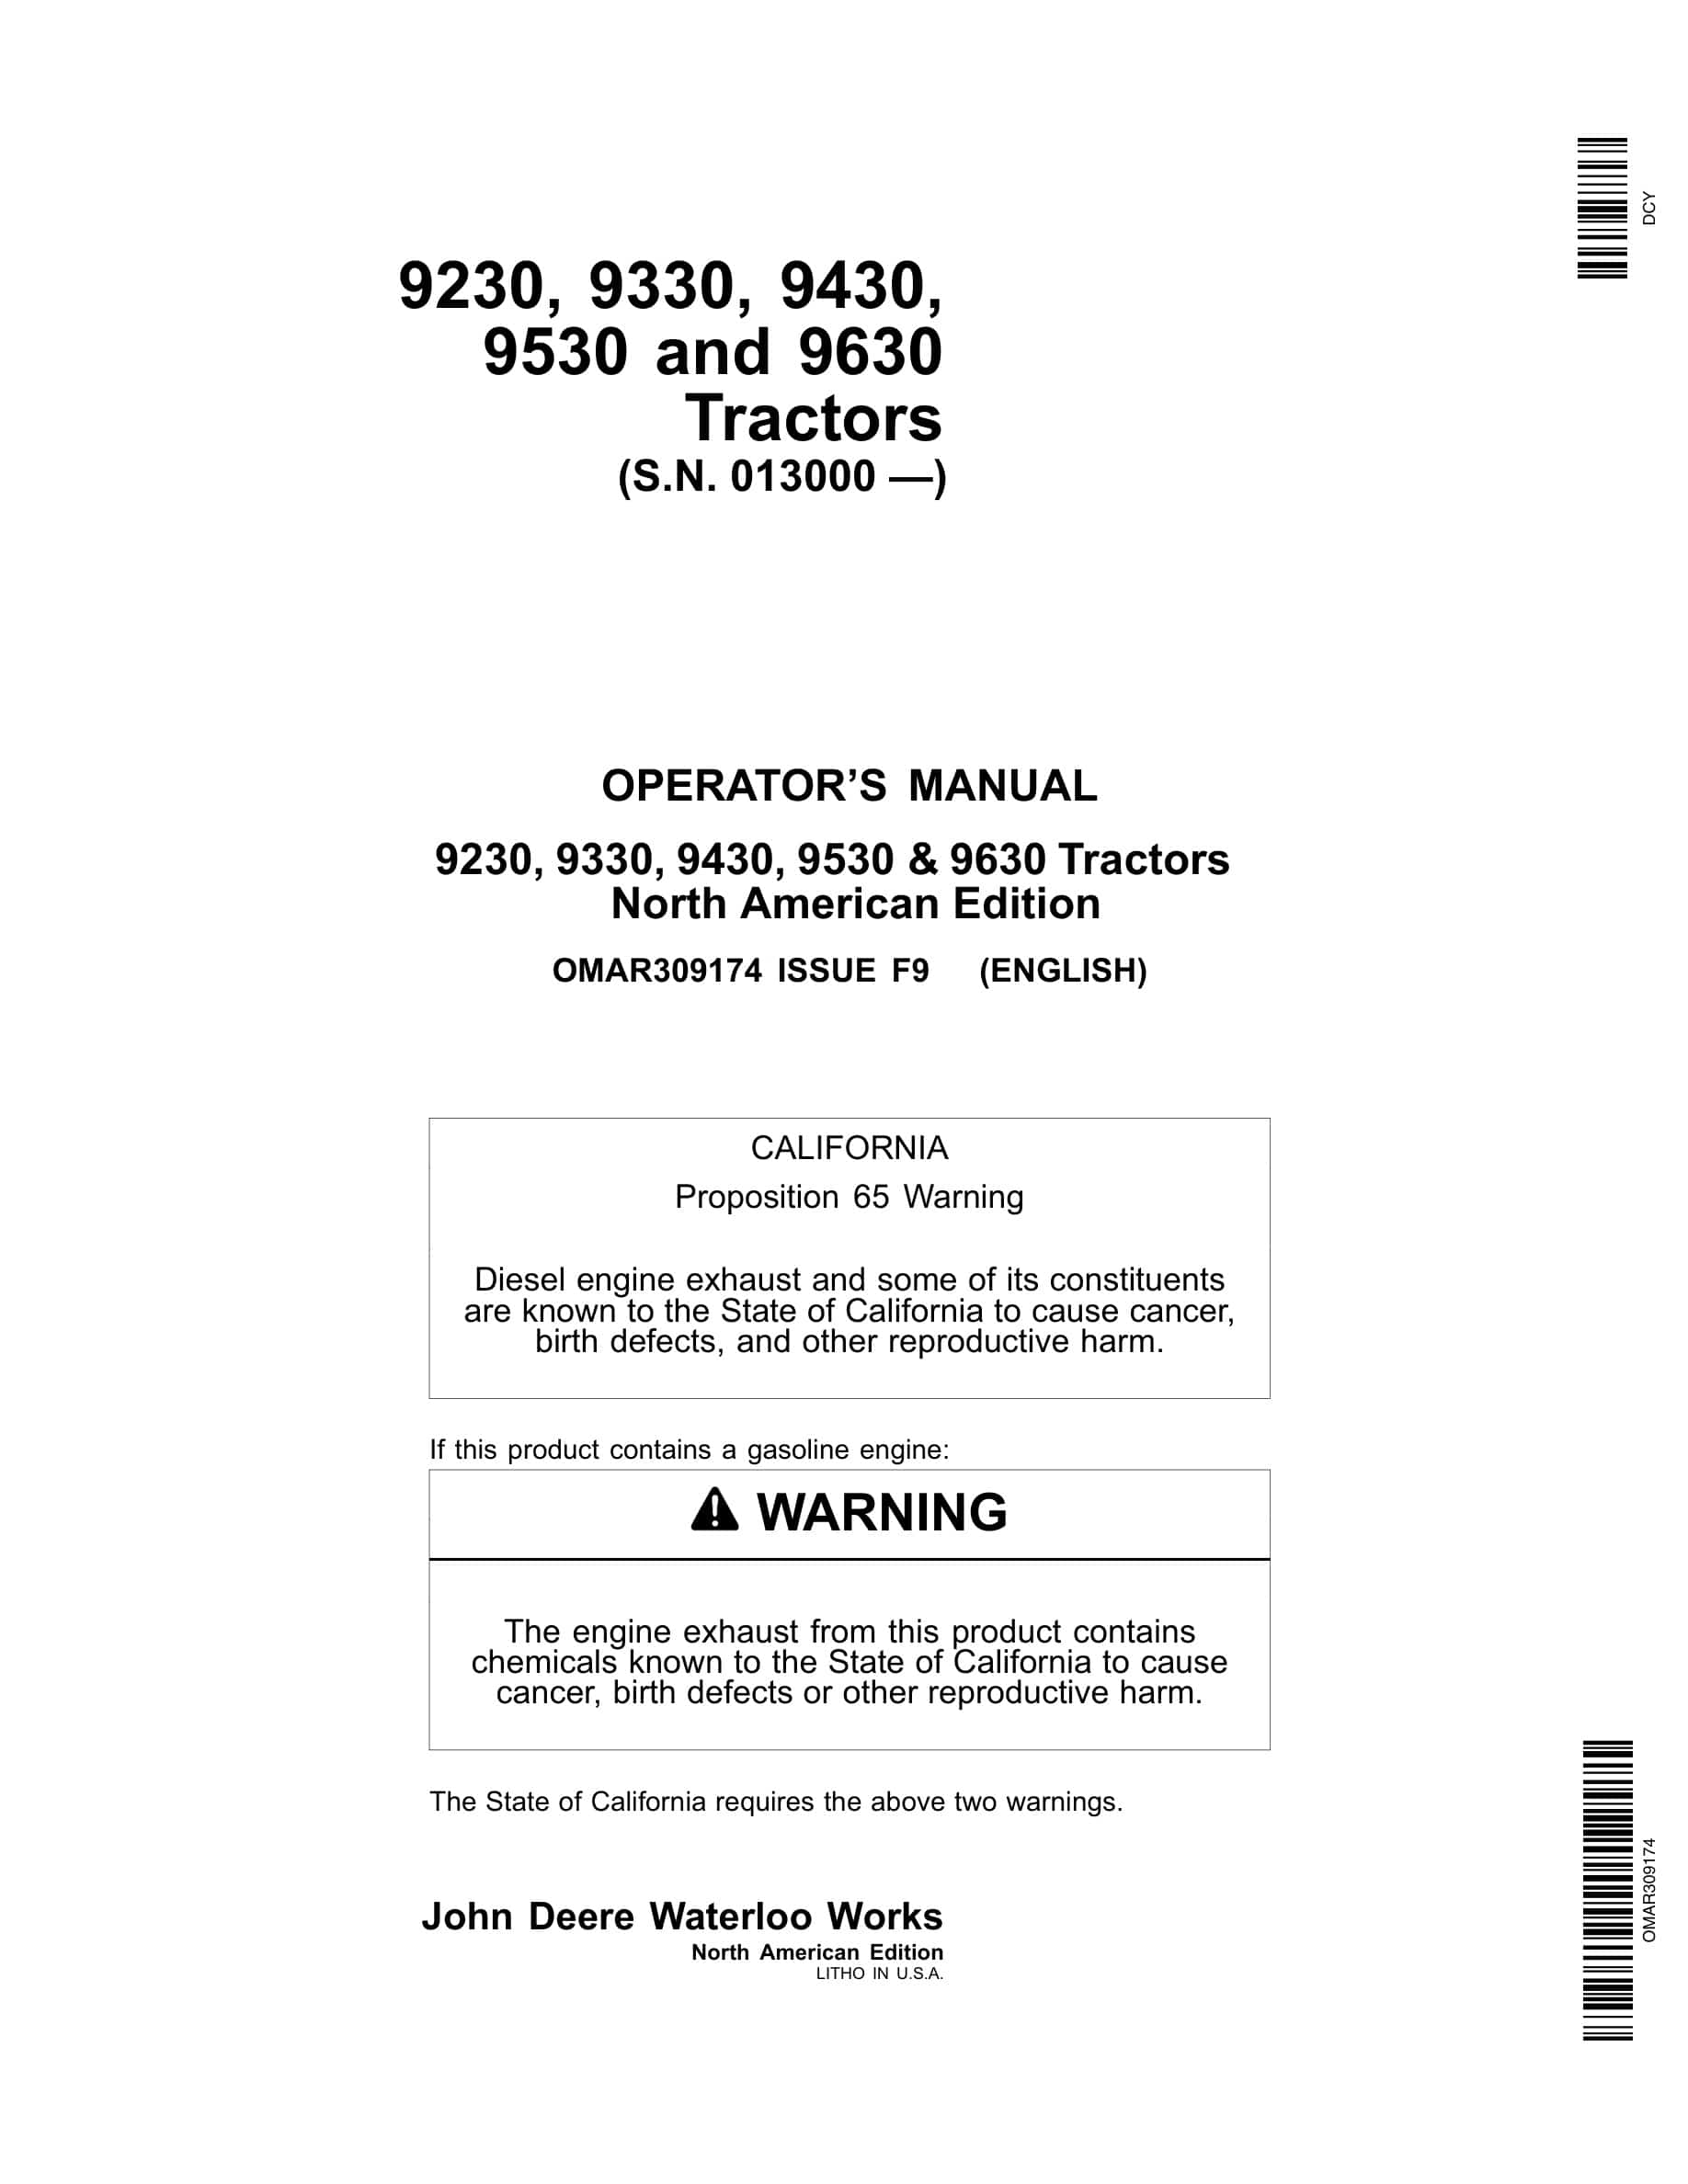 John Deere 9230 9330 9430 9530 9630 Tractor Operator Manual OMAR309174-1